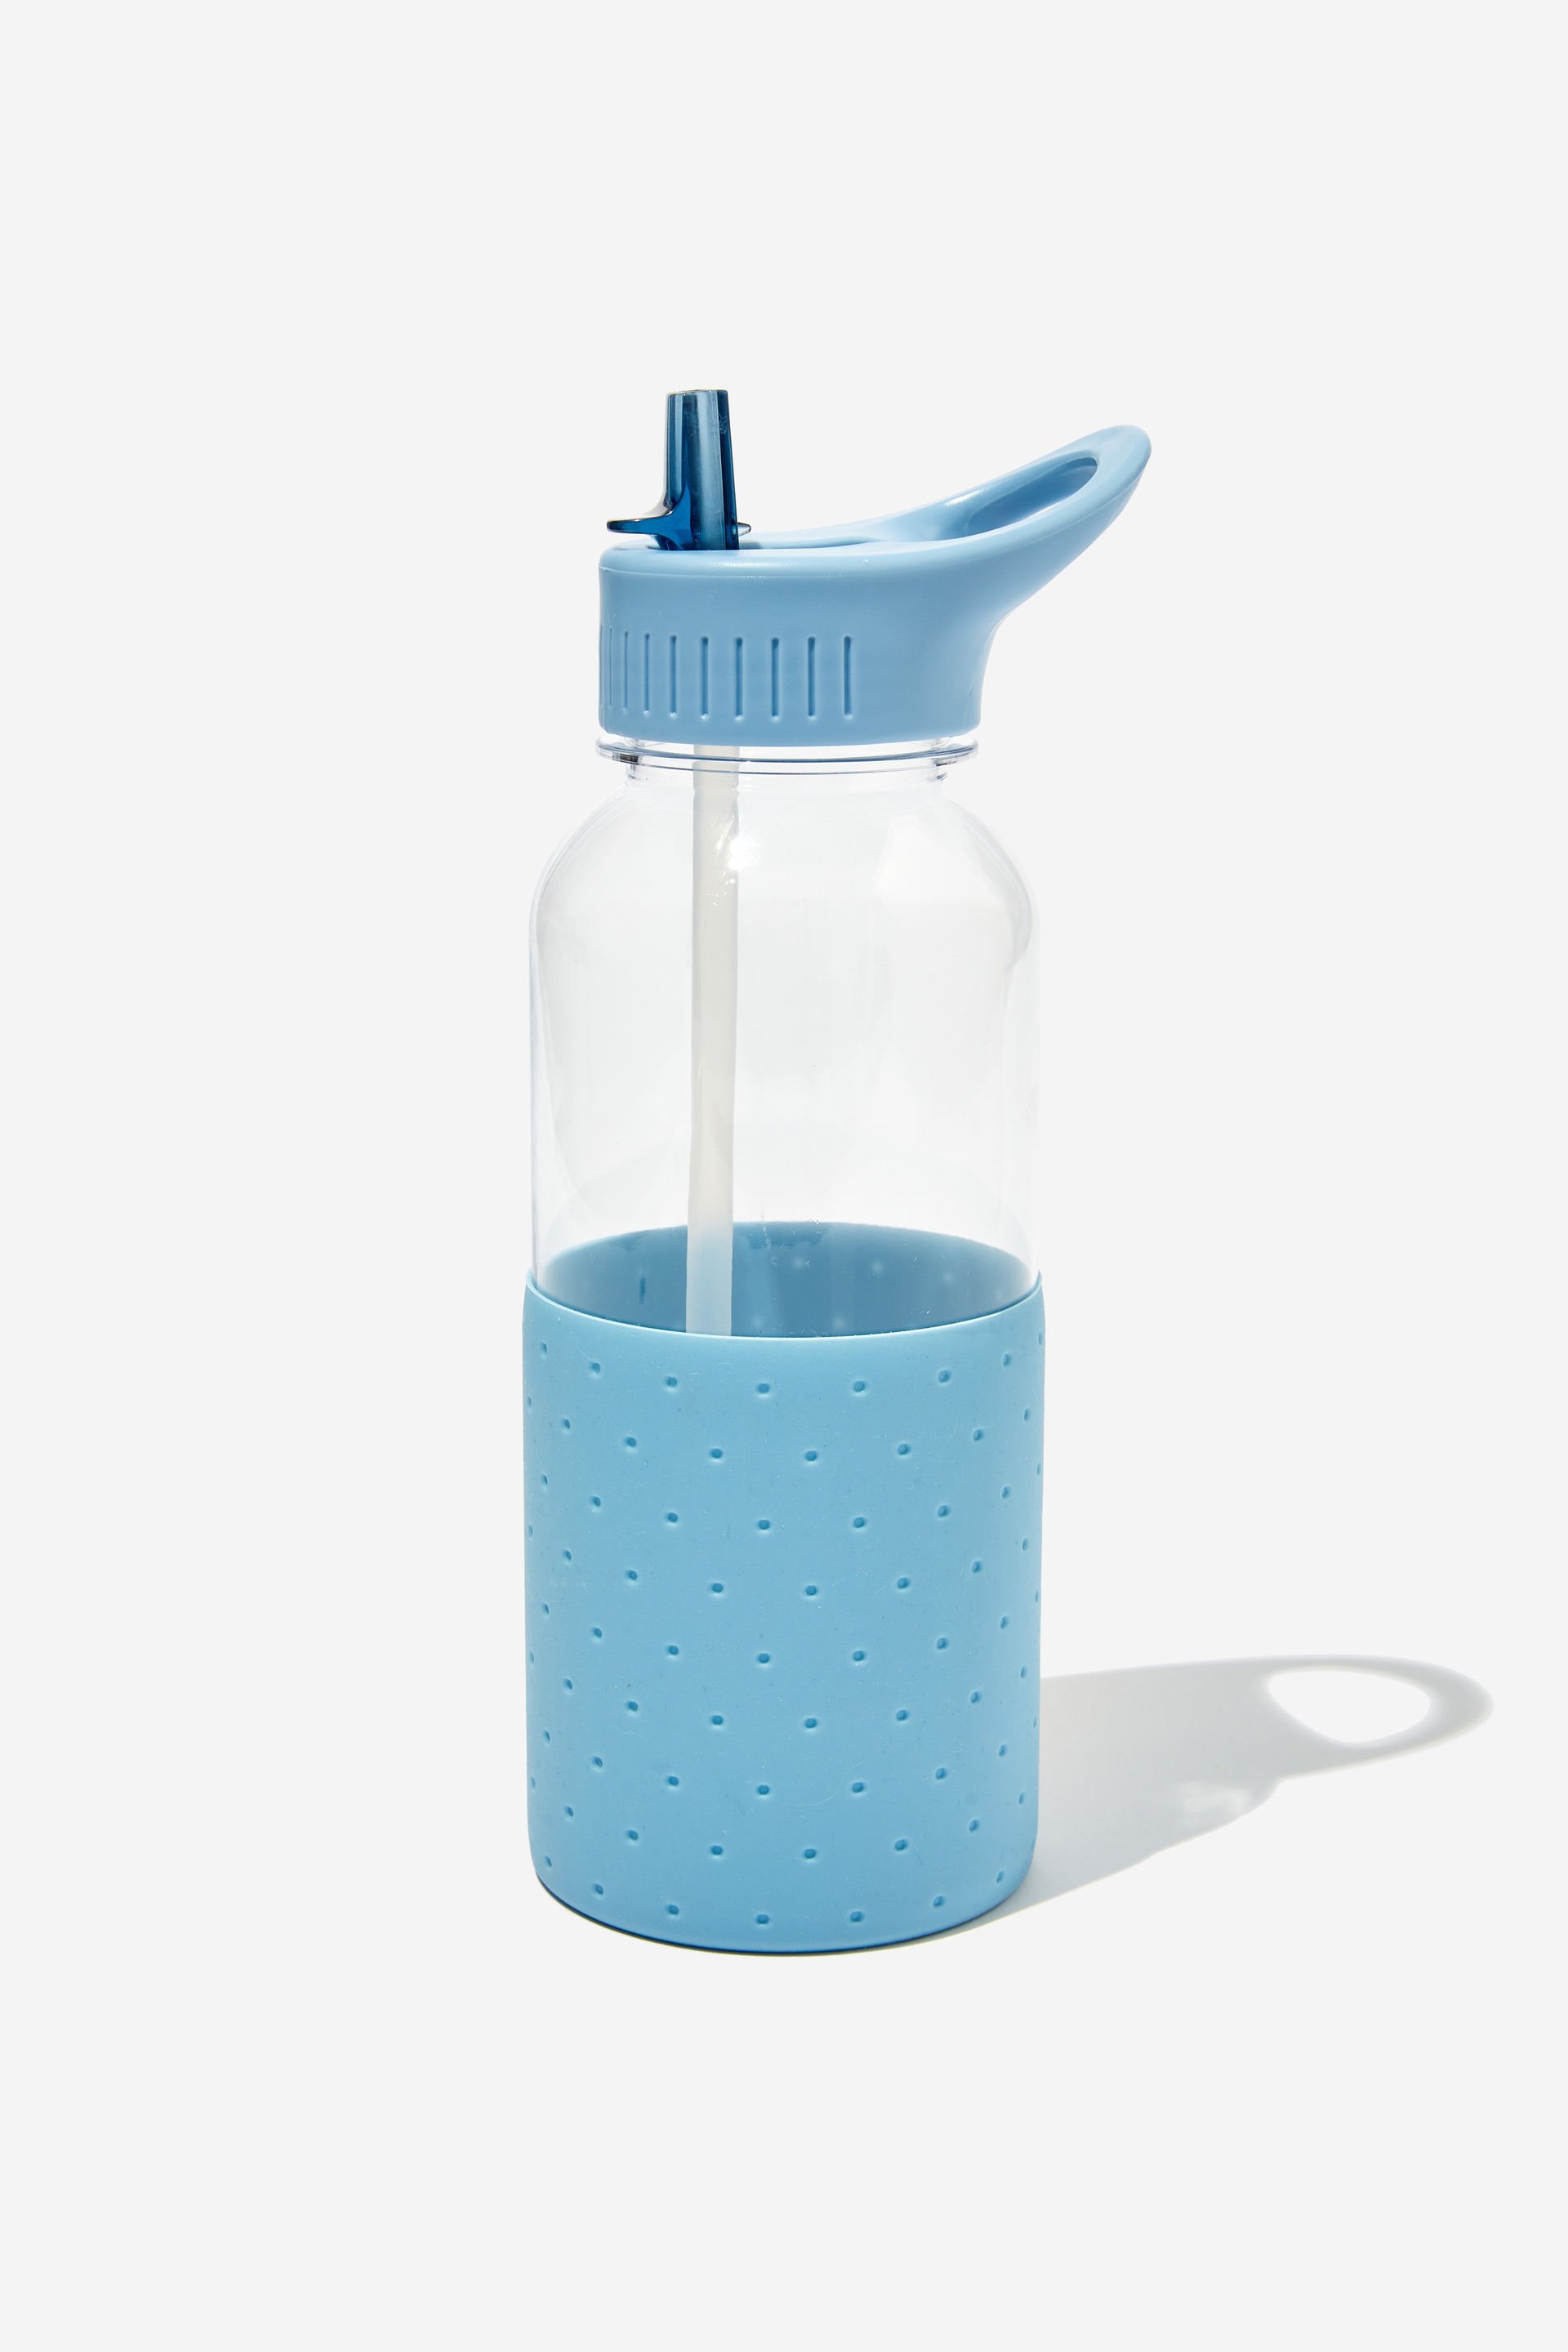 Typo - Premium Drink It Up Bottle - Denim blue polka